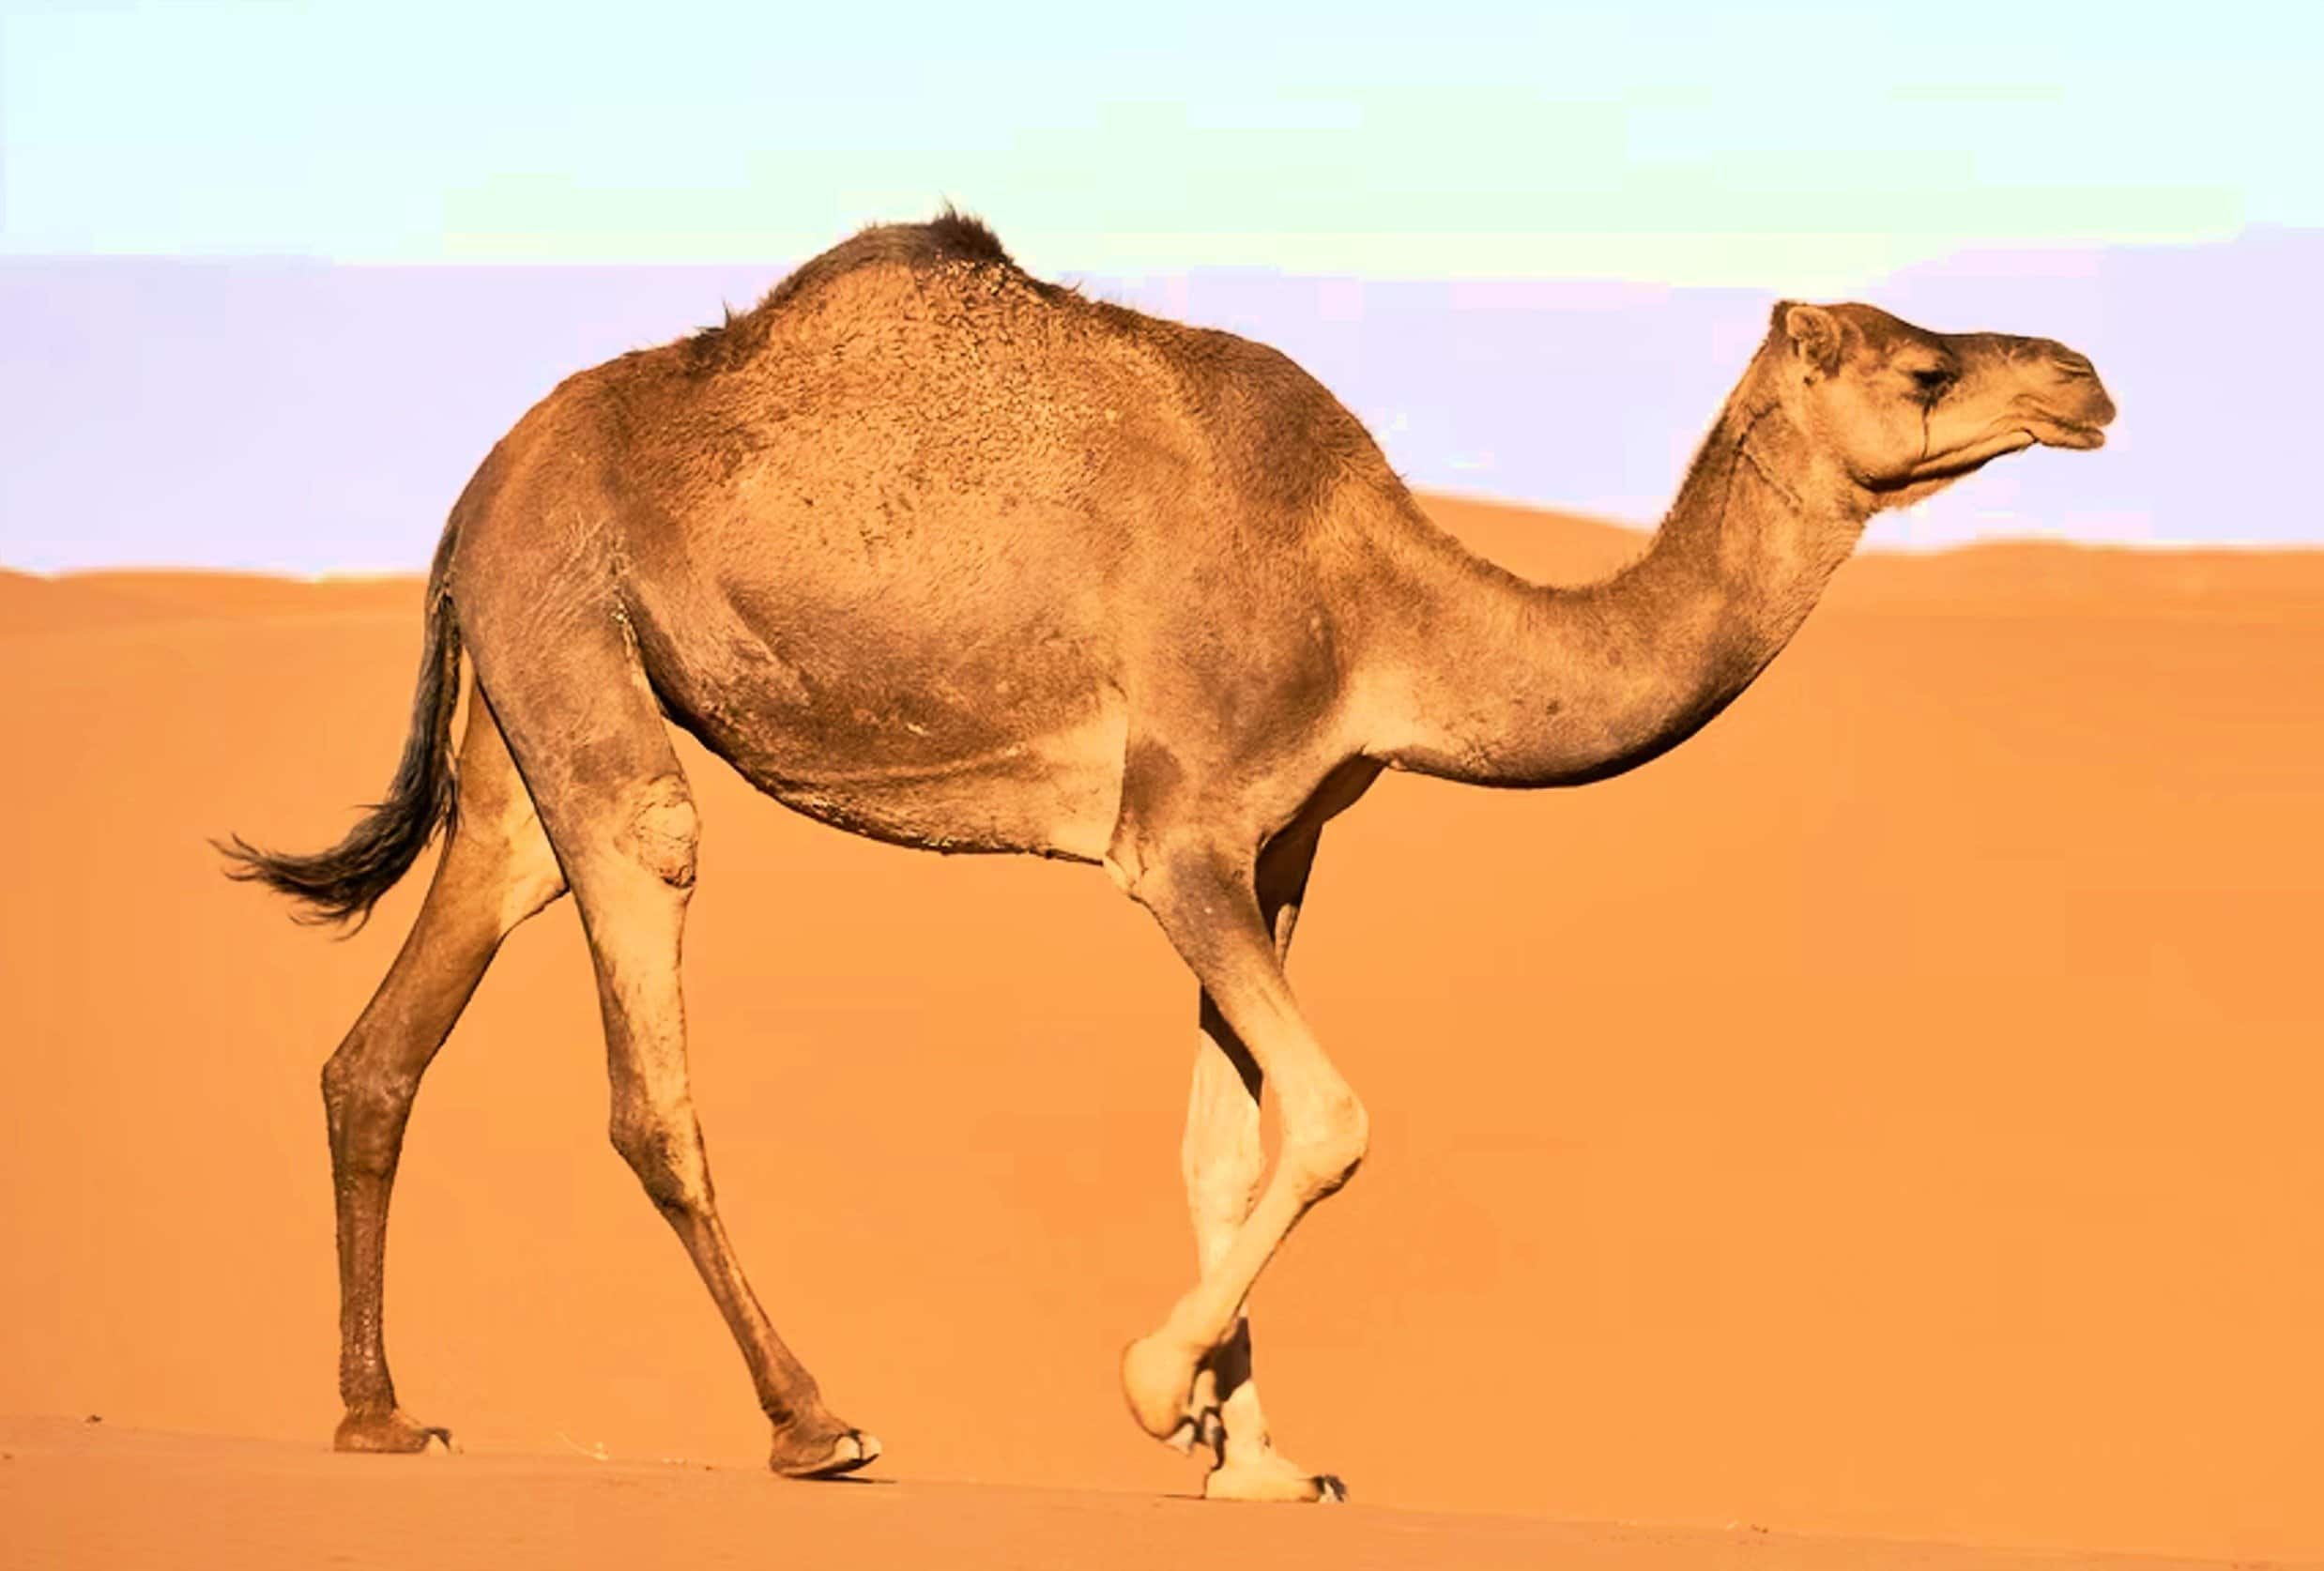 Πανεπιστήμιο Κρήτης για “γρίπη της καμήλας”: Διαψεύδουν οι επιστήμονες ότι υπάρχουν κρούσματα στην Ευρώπη και στον υπόλοιπο κόσμο